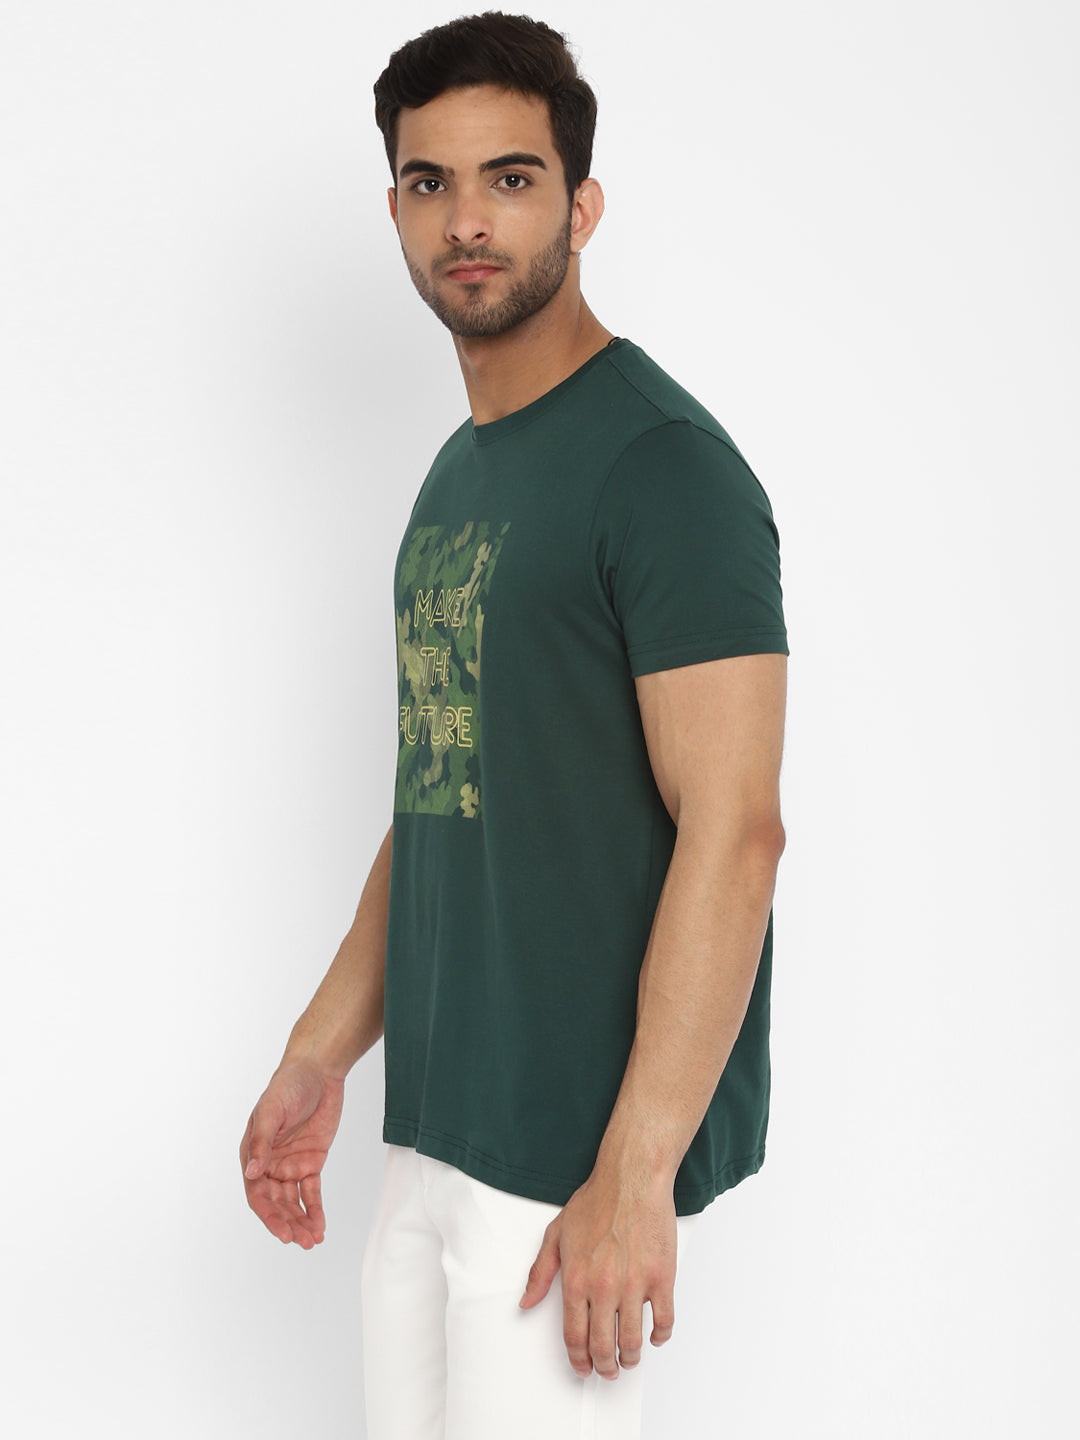 Essentials Dark Green Printed Round Neck T-Shirt